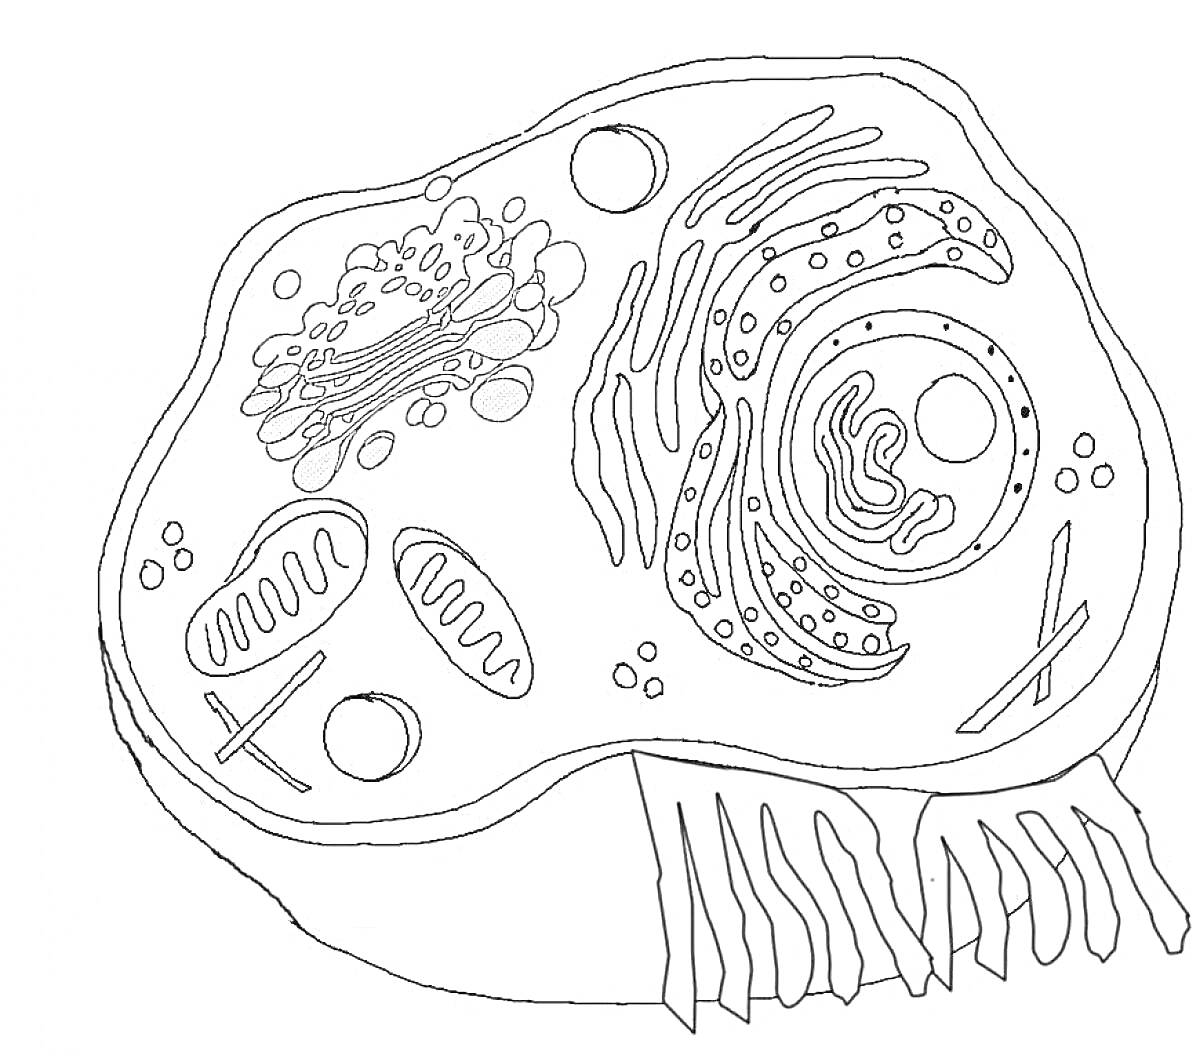 Раскраска Клетка с органеллами, включает ядро, митохондрии, аппарат Гольджи, эндоплазматическую сеть, рибосомы, цитоплазму, клеточную мембрану